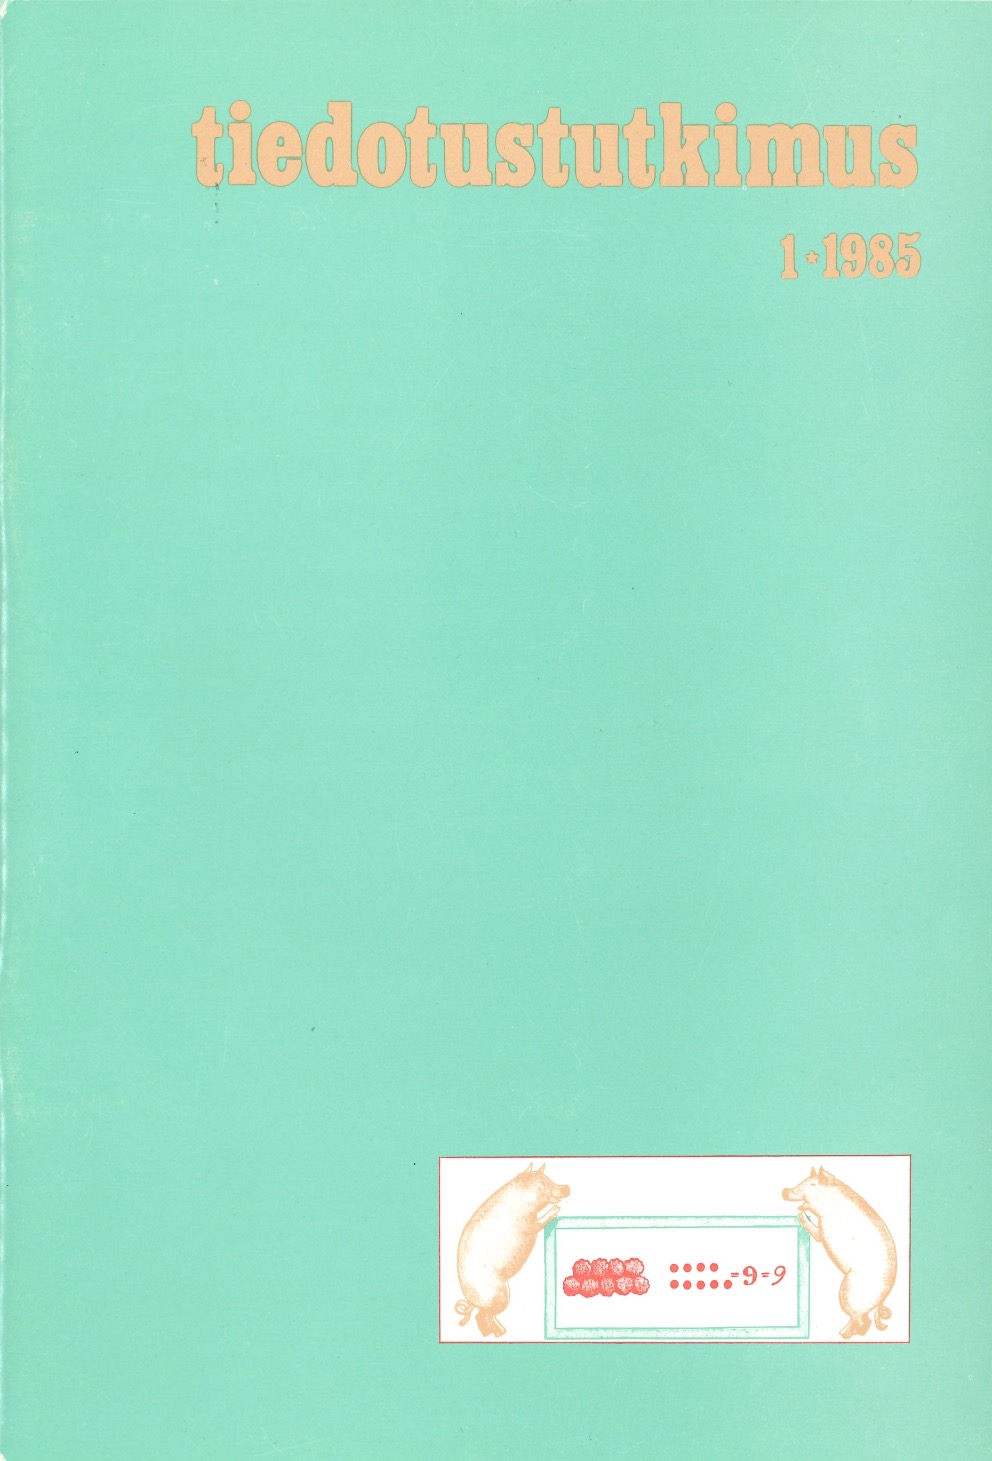 					Näytä Vol 8 Nro 1 (1985)
				